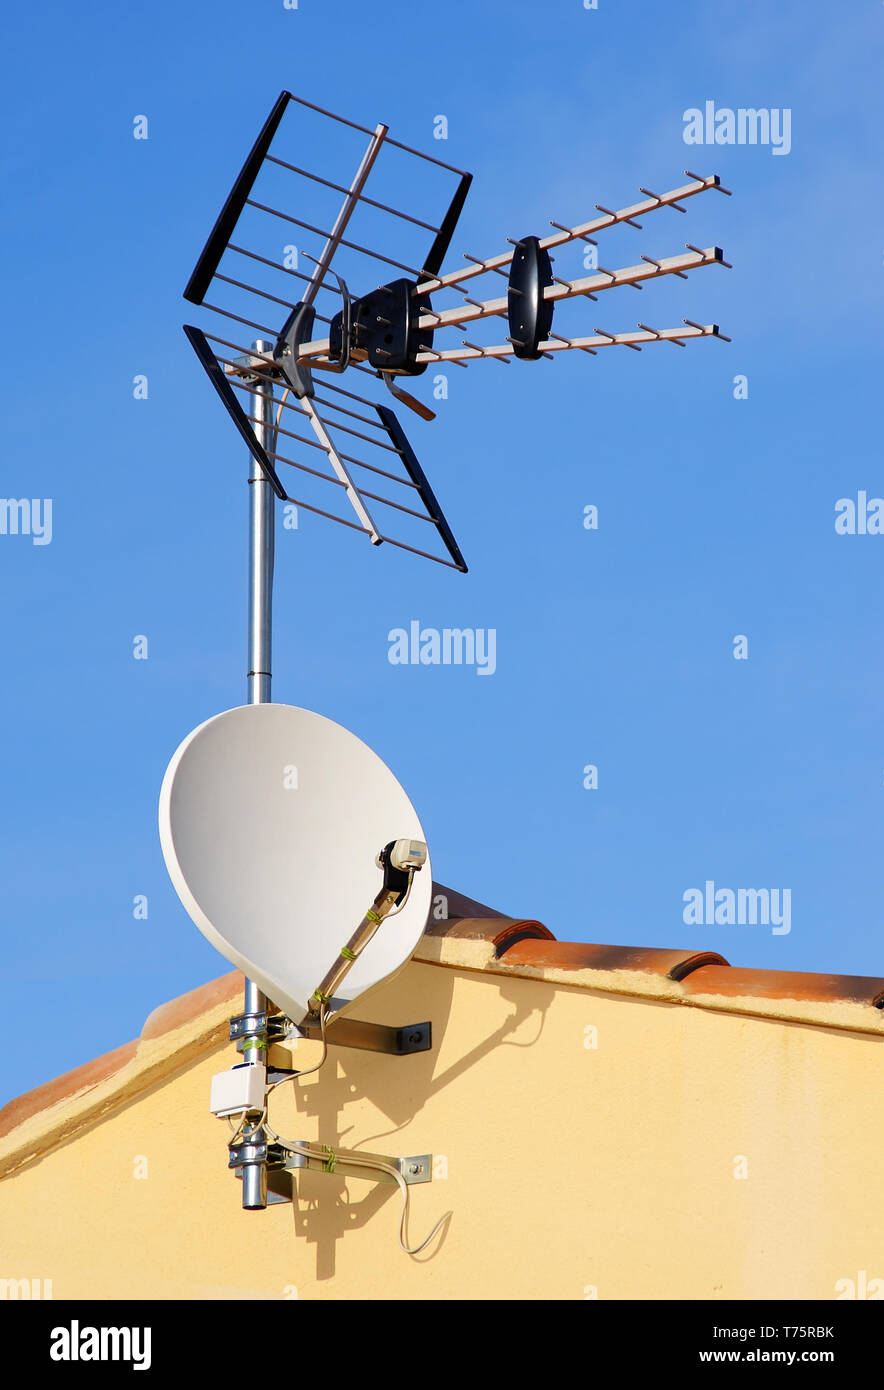 Antennes de télévision sur le toit d'une maison Banque D'Images